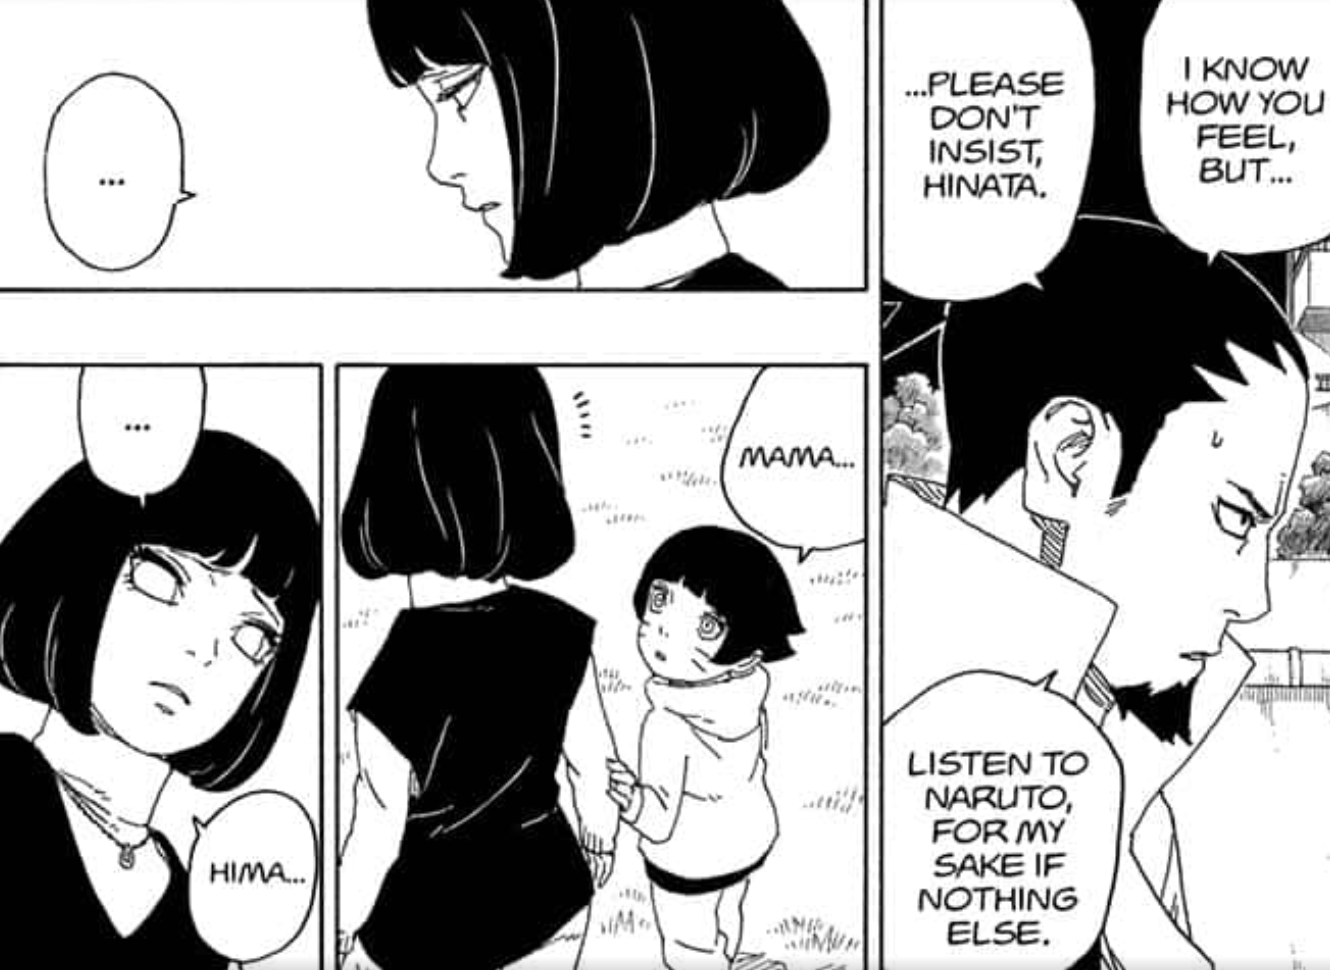 Hinata wants to help Naruto rescue Boruto and Kawaki